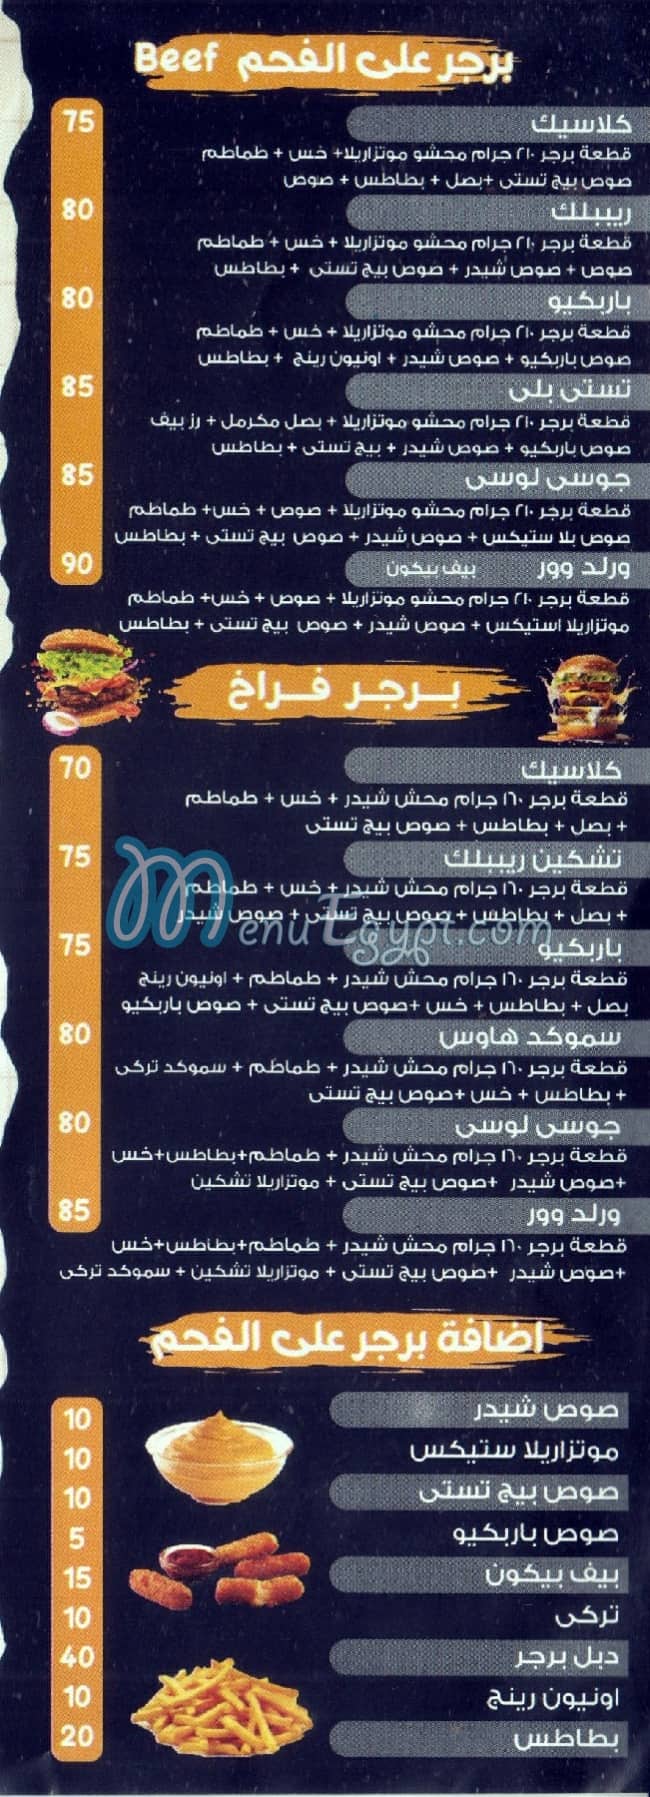 El Mohtaref menu prices